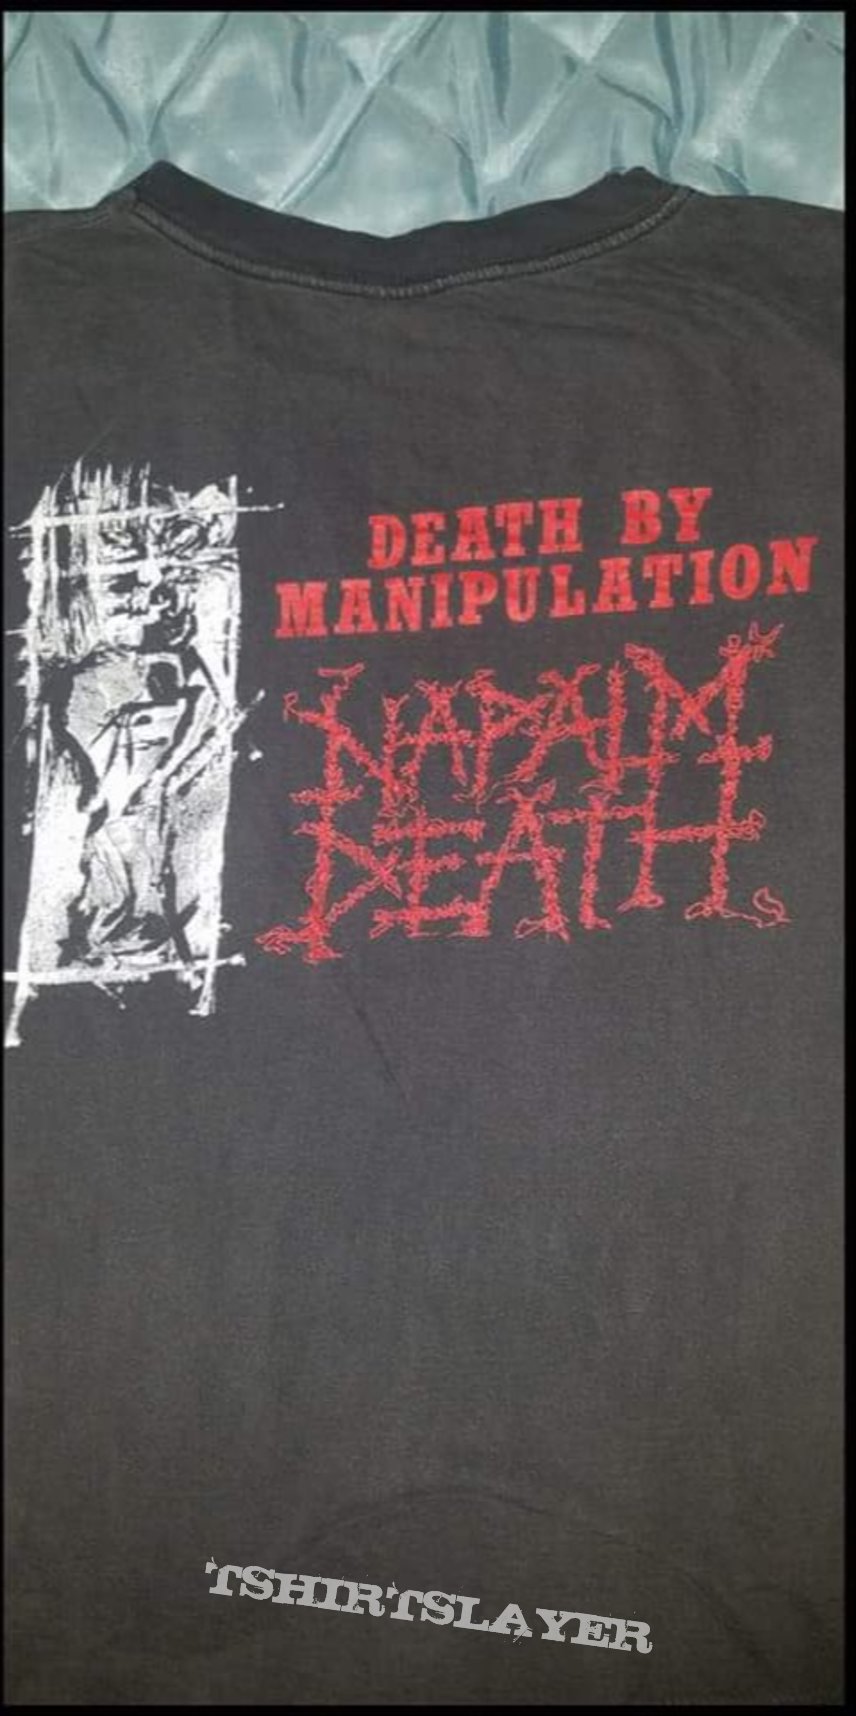 Napalm death shirt